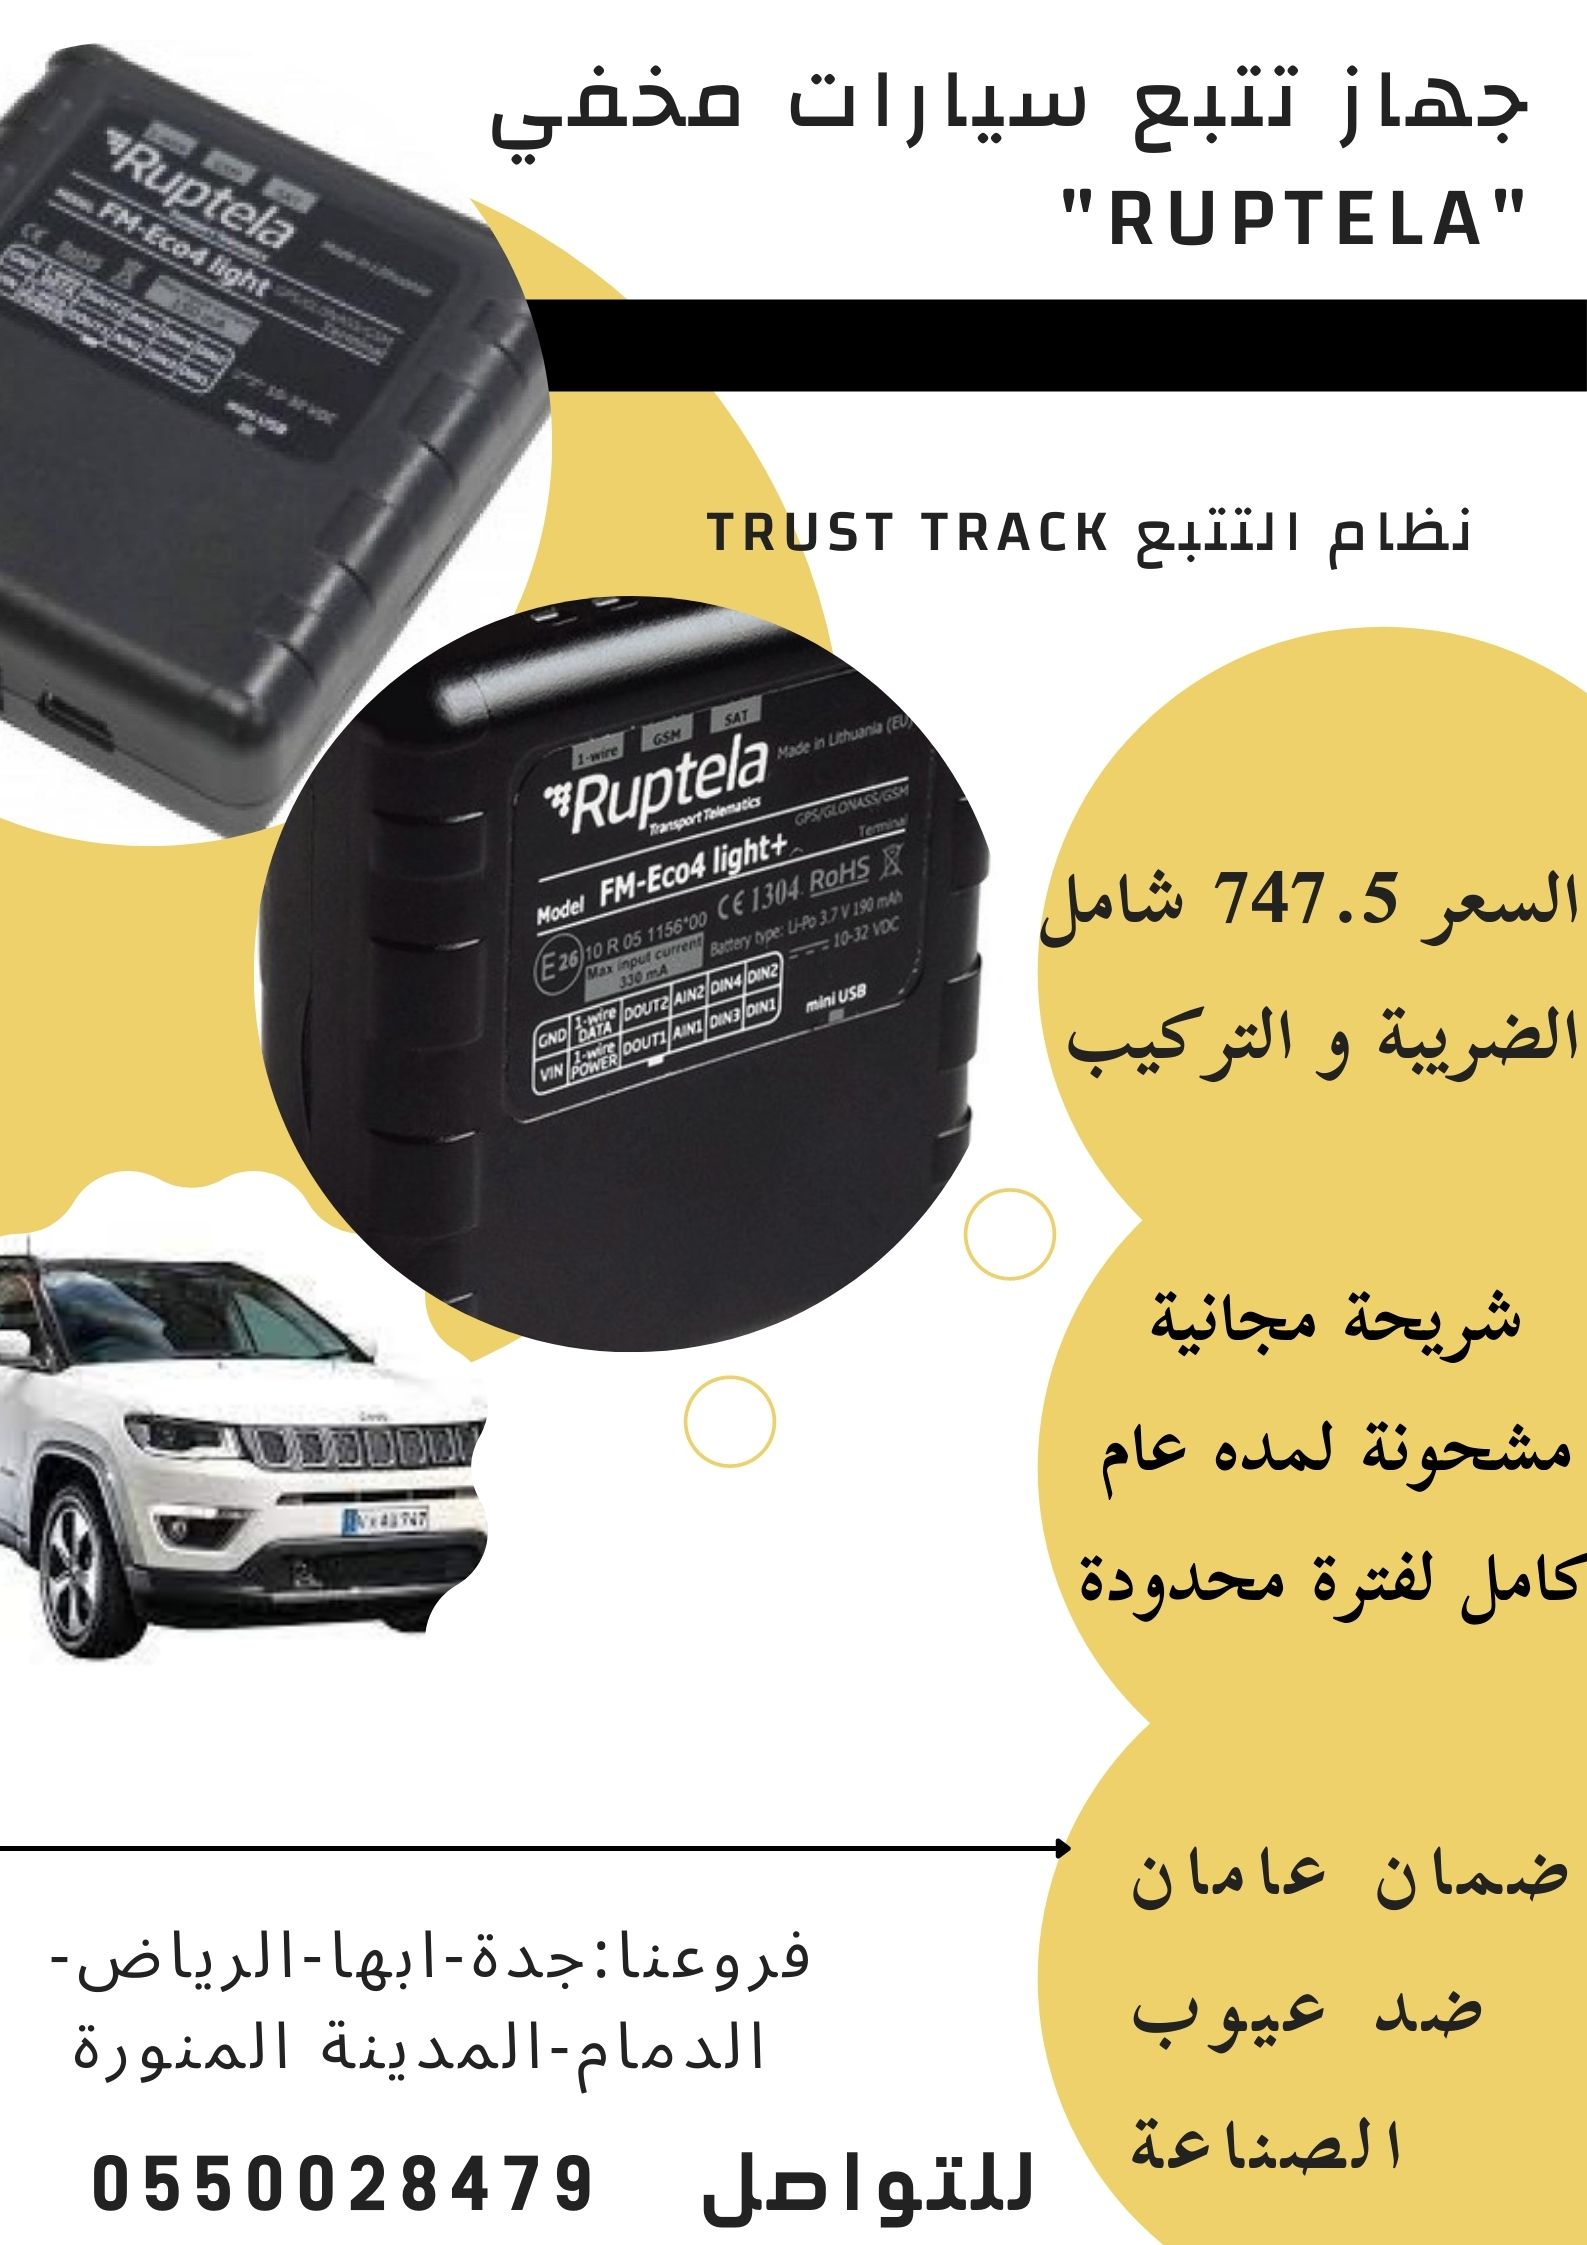 جهاز تتبع جميع المركبات صغير الحجم مخفي بافضل الاسعار في السعودية 2021.